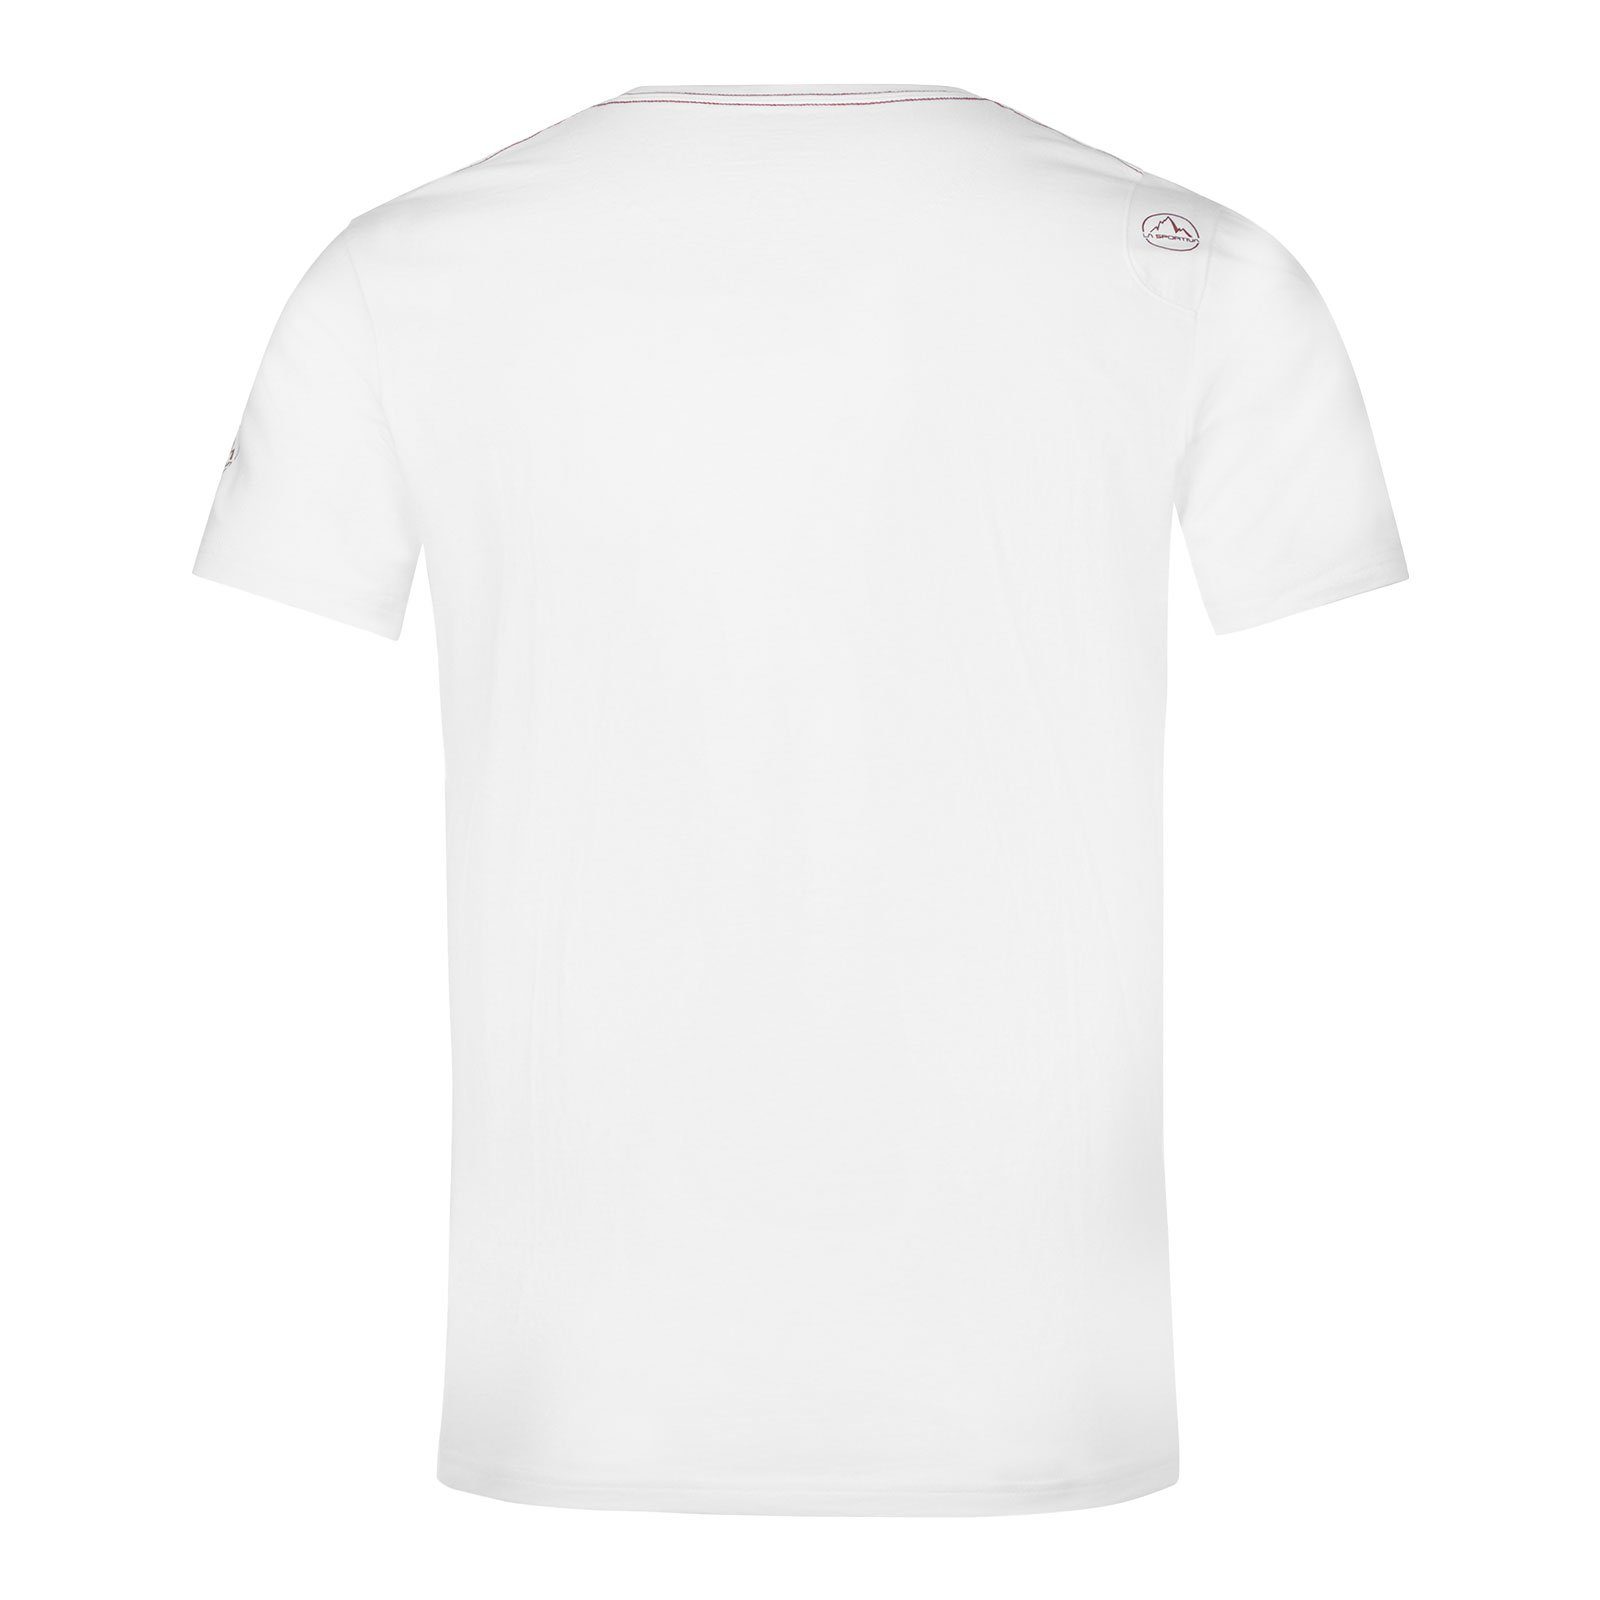 Van M Sportiva sangria 100% aus 000320 La organischer Baumwolle T-Shirt white /